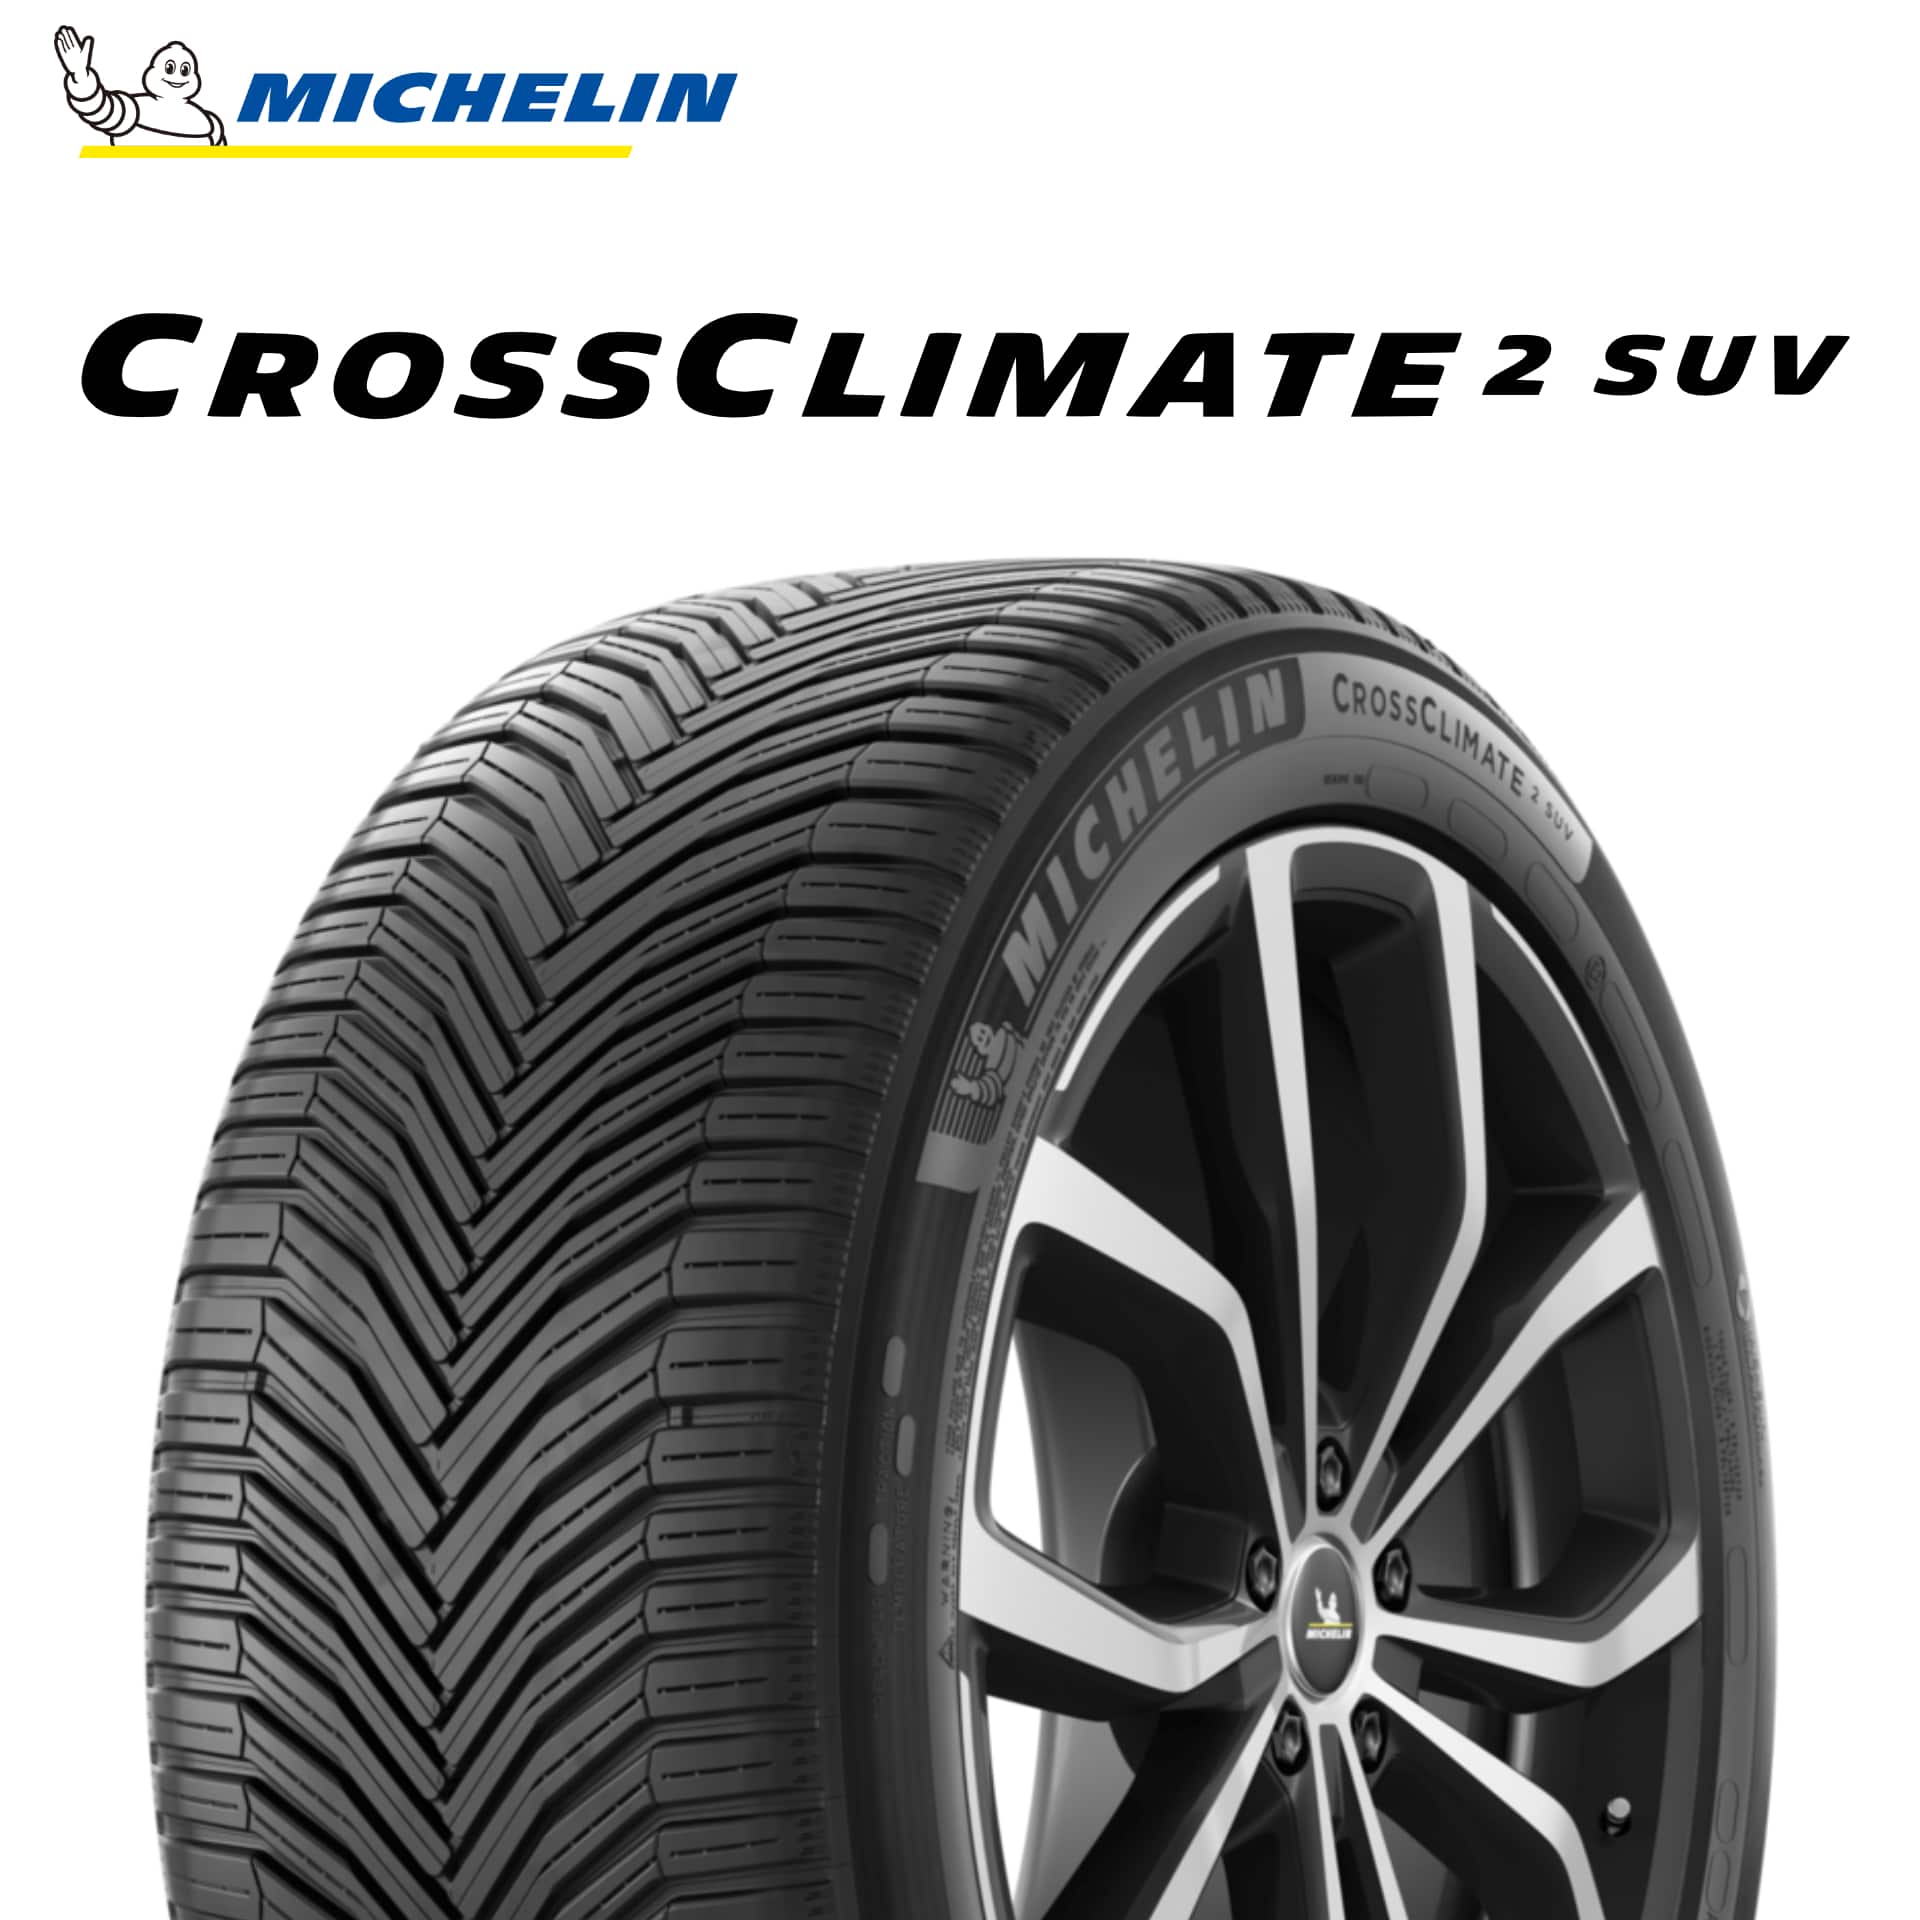 オールシーズン CROSS CLIMATE SUV 235 60R17 106V XL クロス クライメート CrossClimate クロスクライメート Michelin ミシュラン - 4